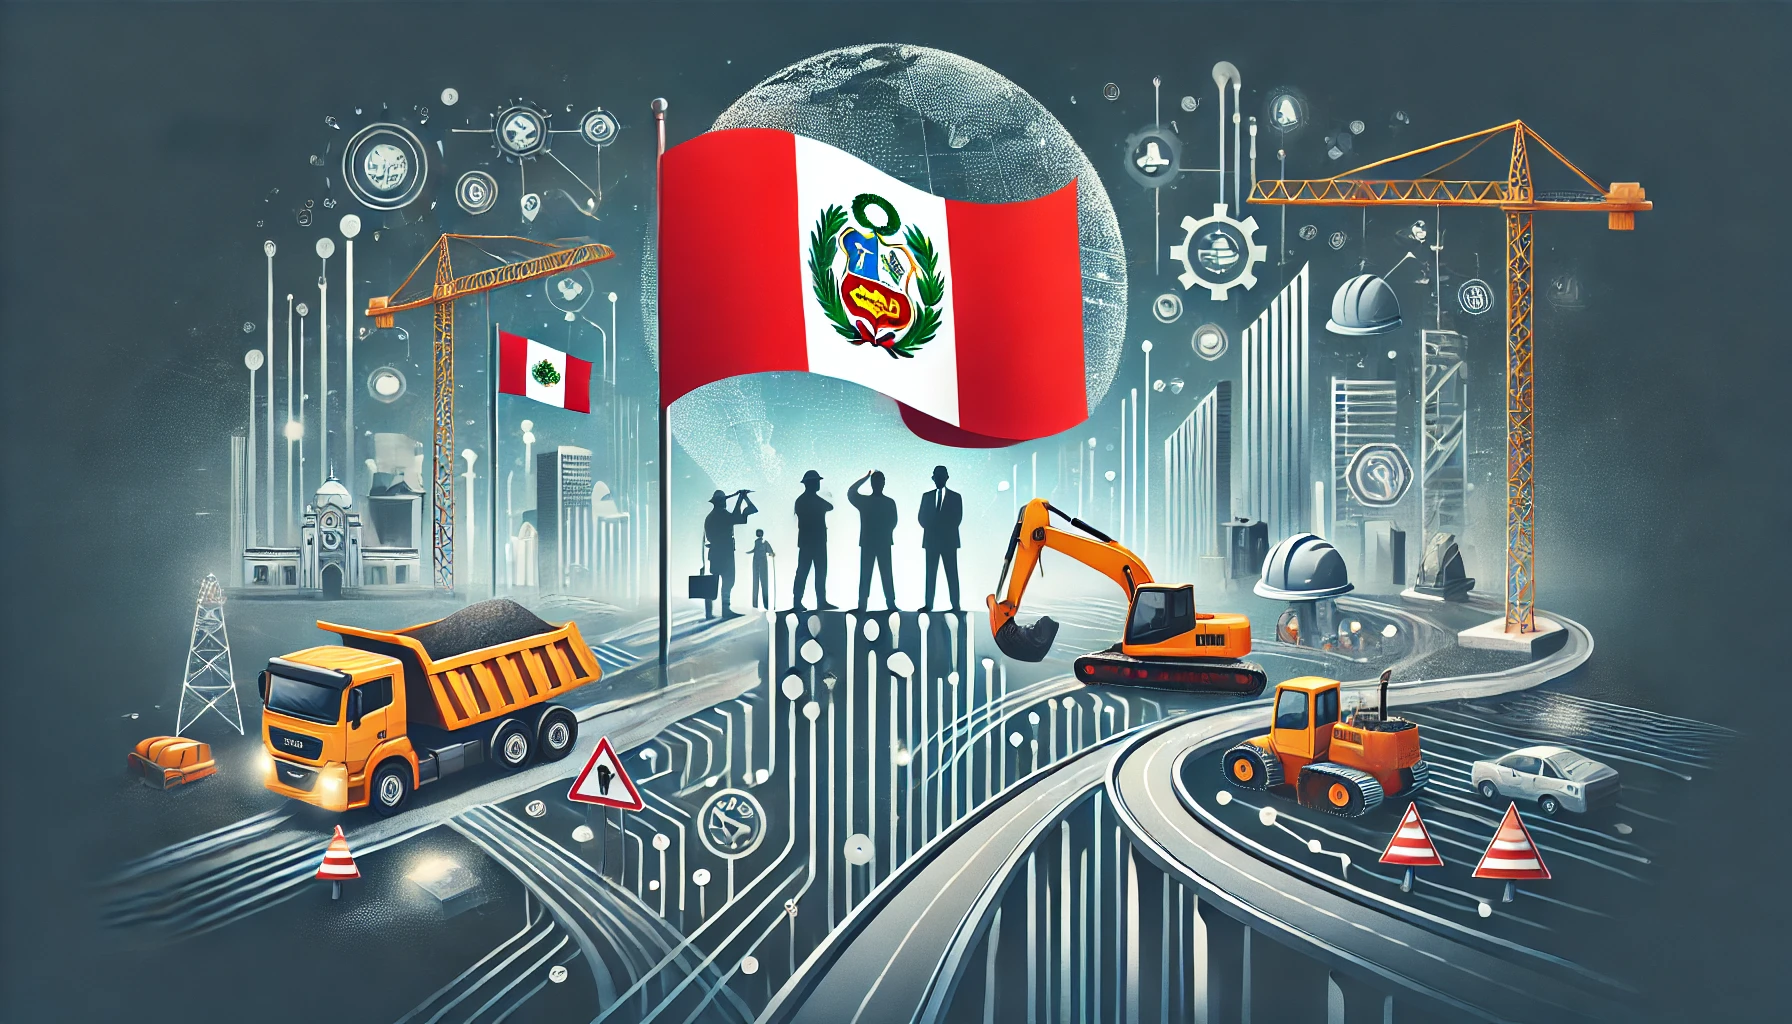 Travaux publics et déduction fiscale : Stimuler les investissements dans les infrastructures au Pérou